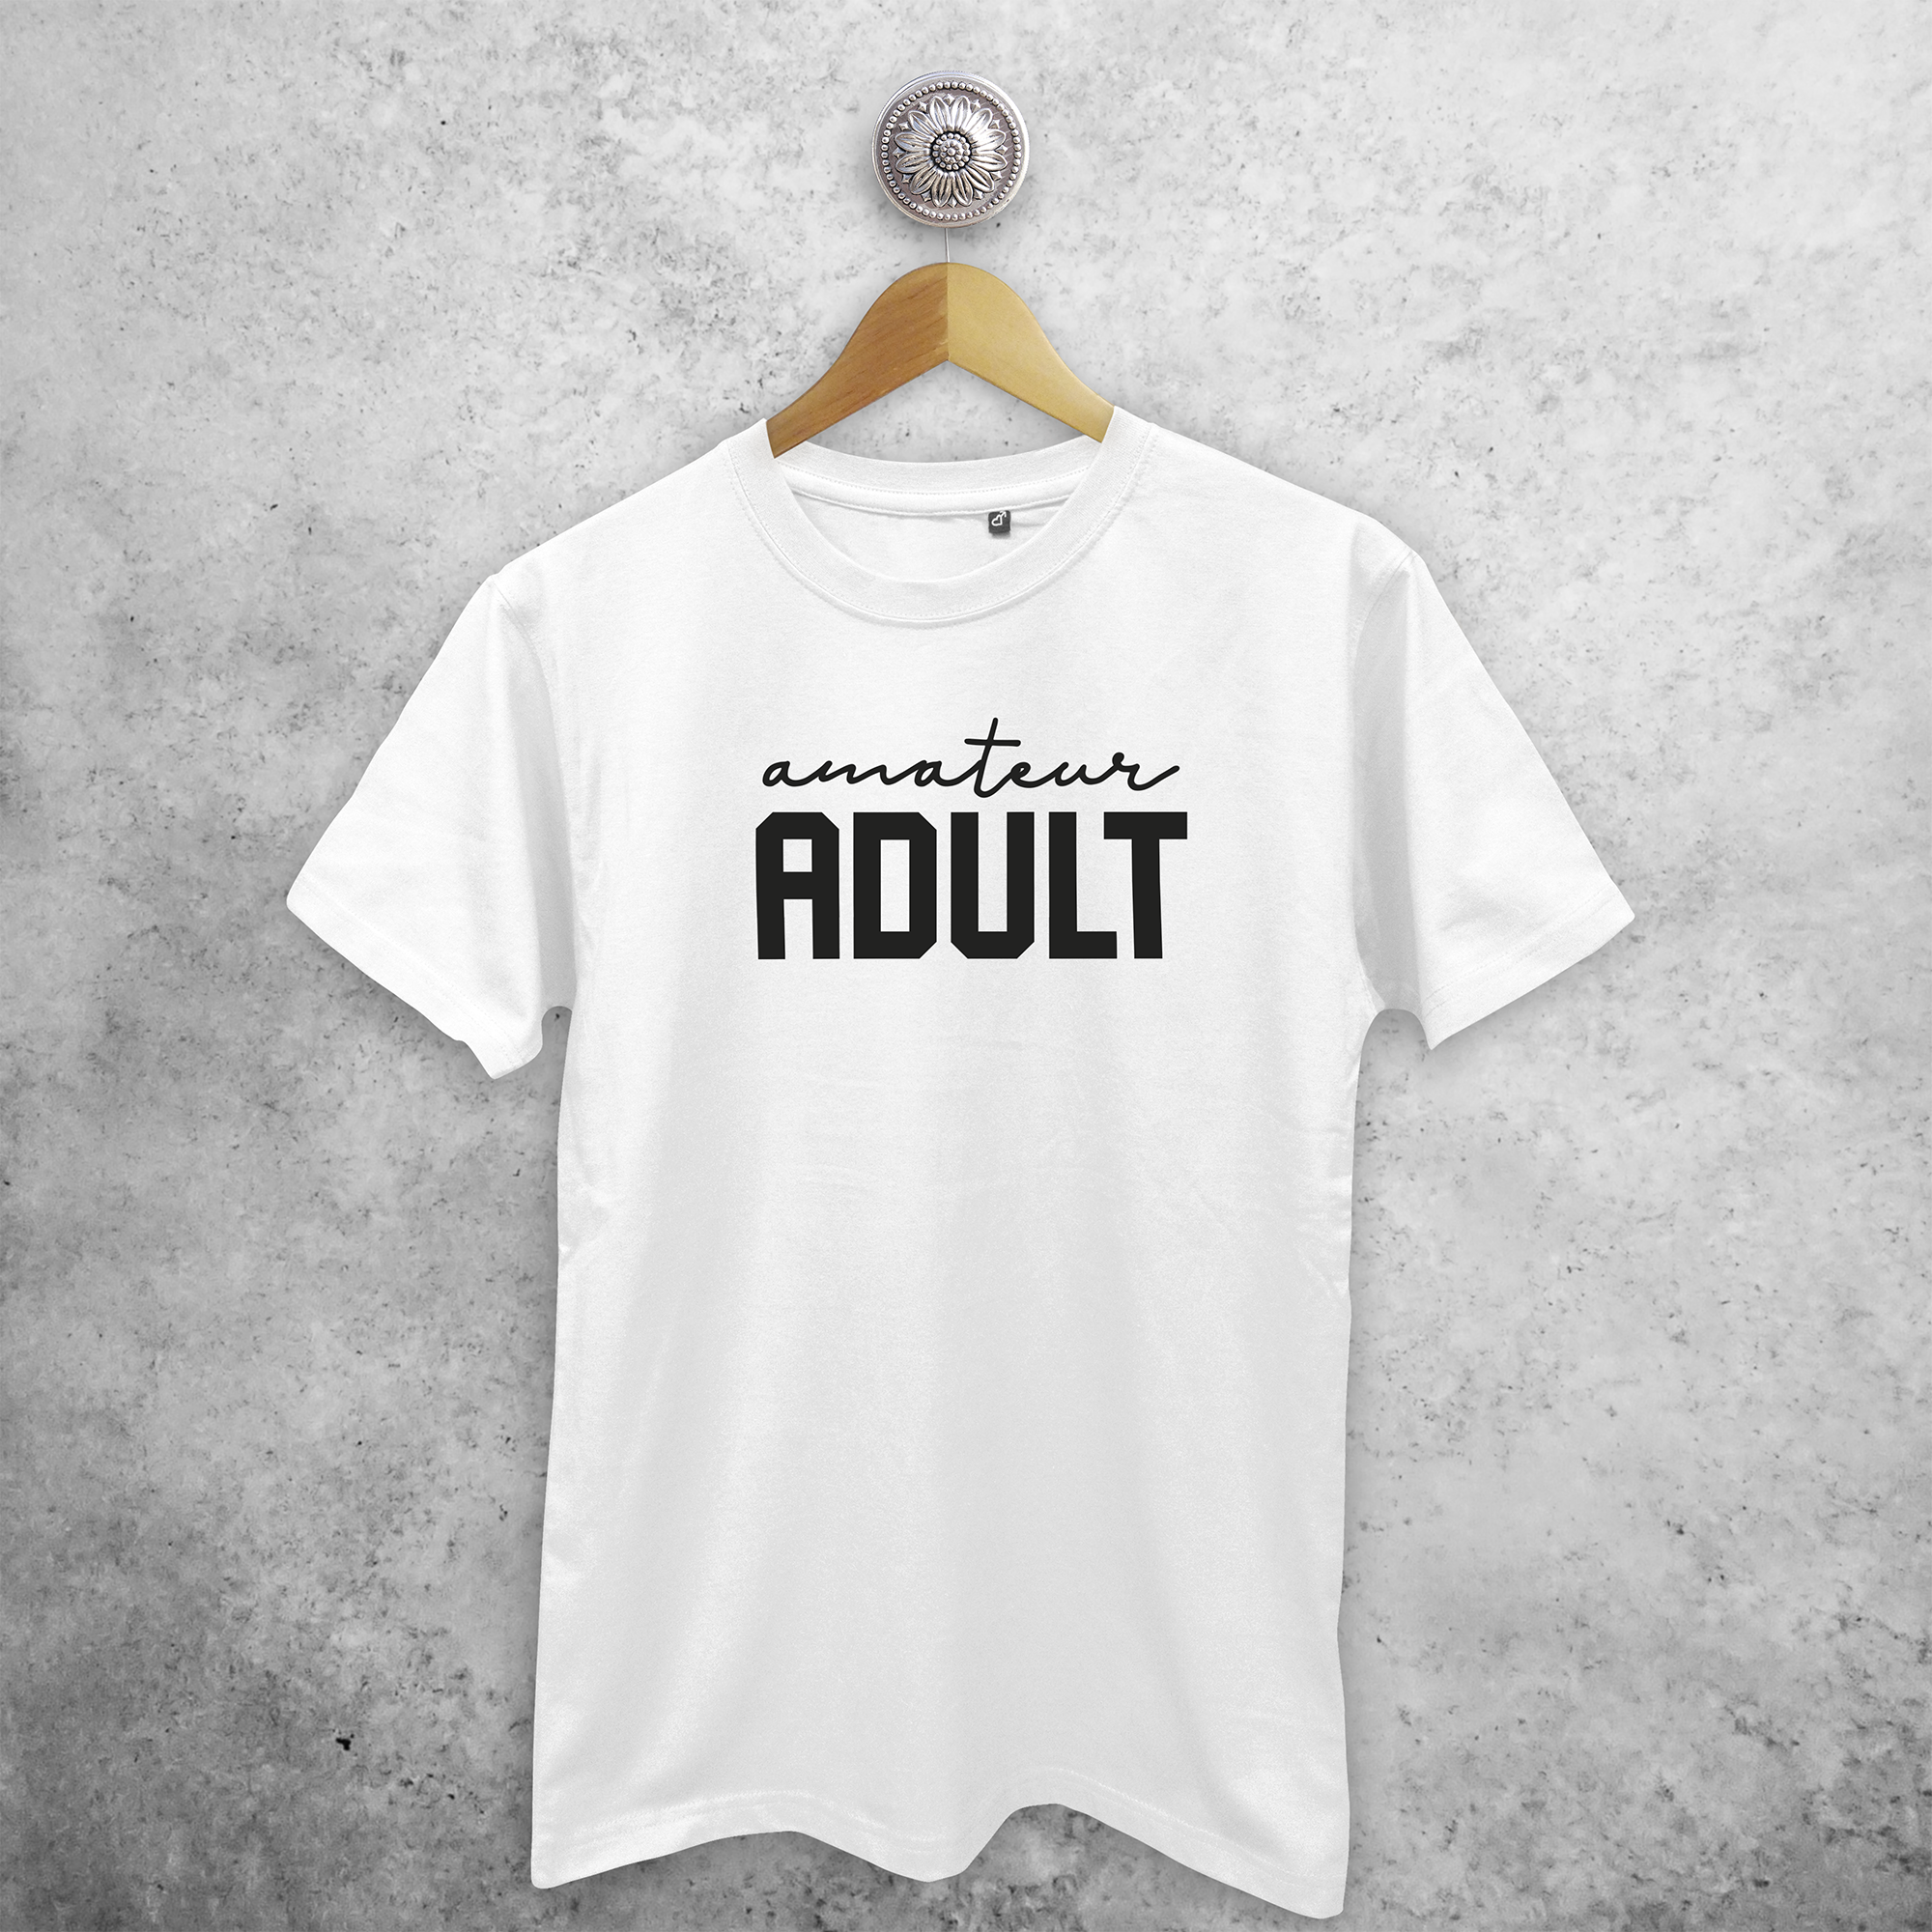 'Amateur adult' adult shirt